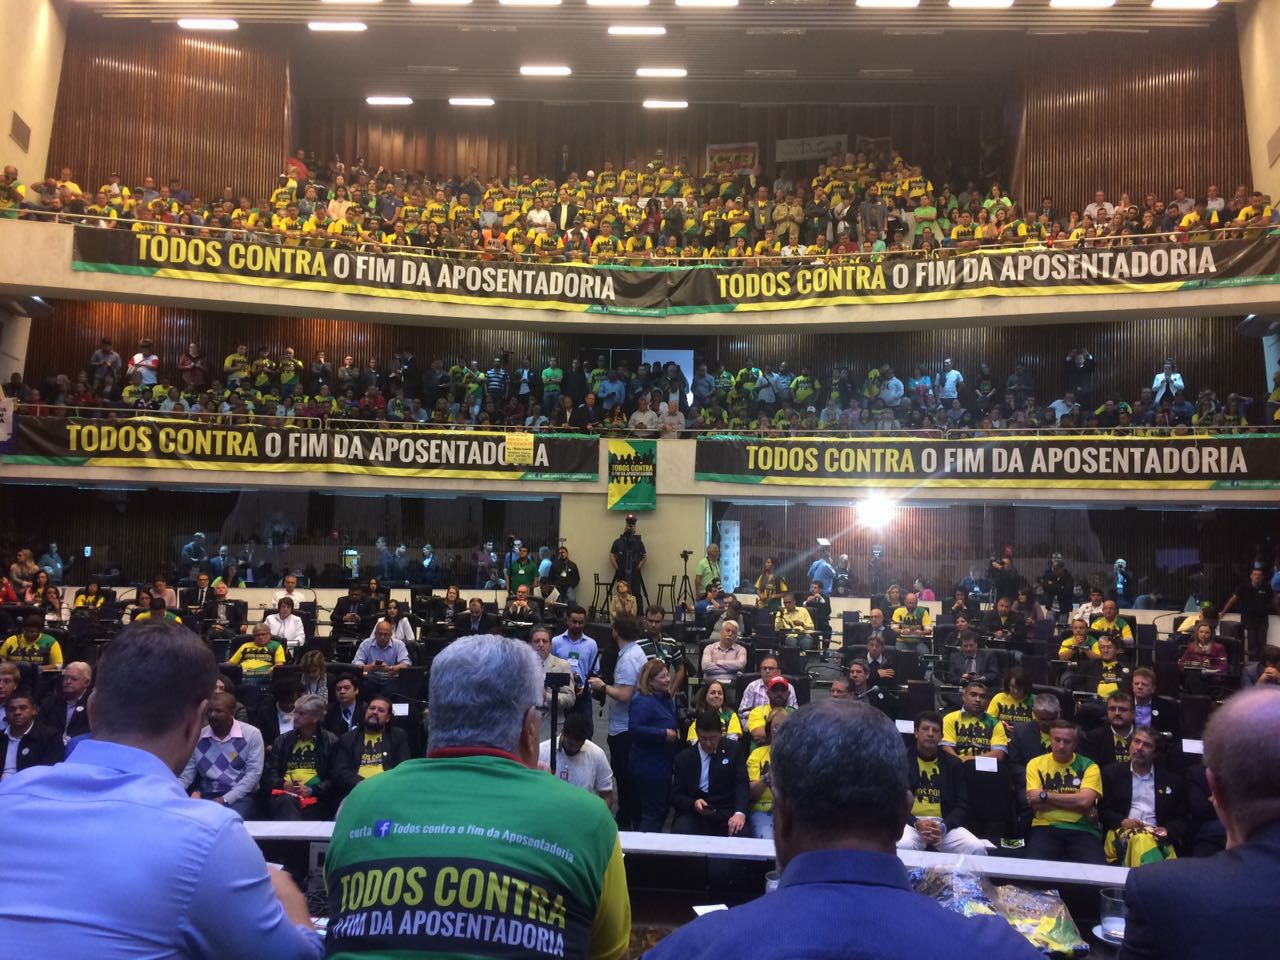 Paraná diz NÃO ao fim da aposentadoria na audiência pública sobre a reforma da Previdência